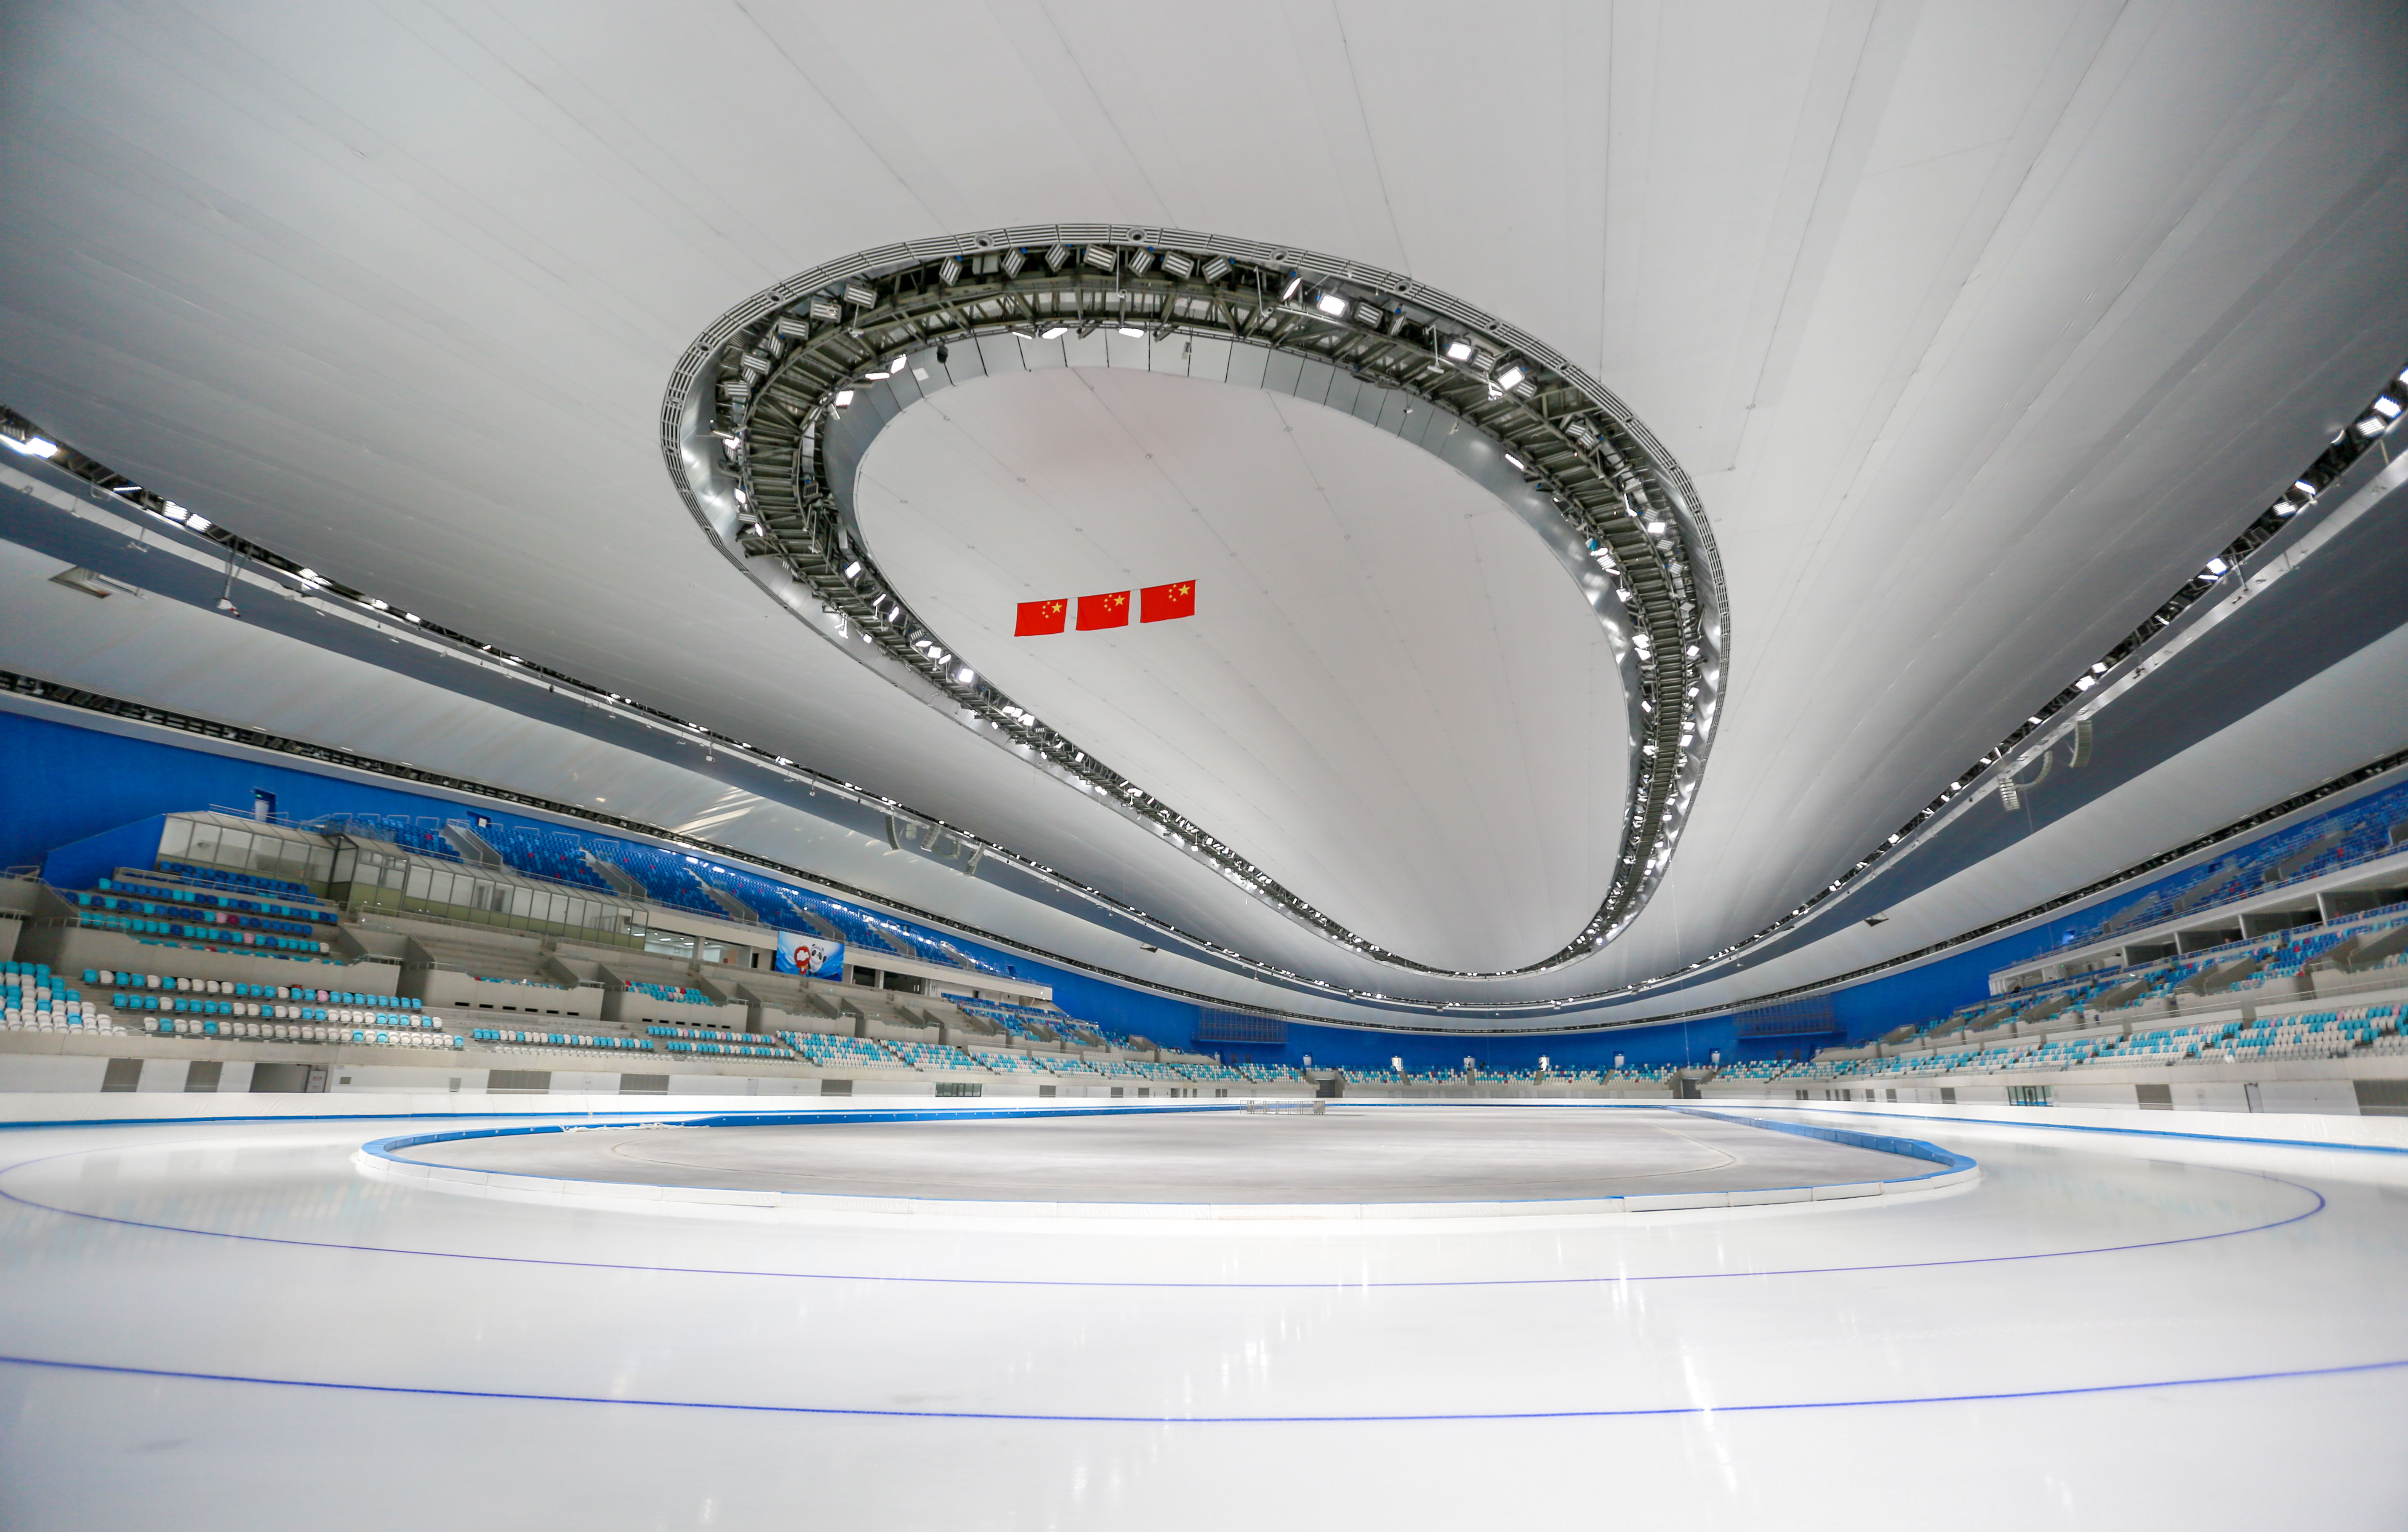 2022冬奥会黑科技图片